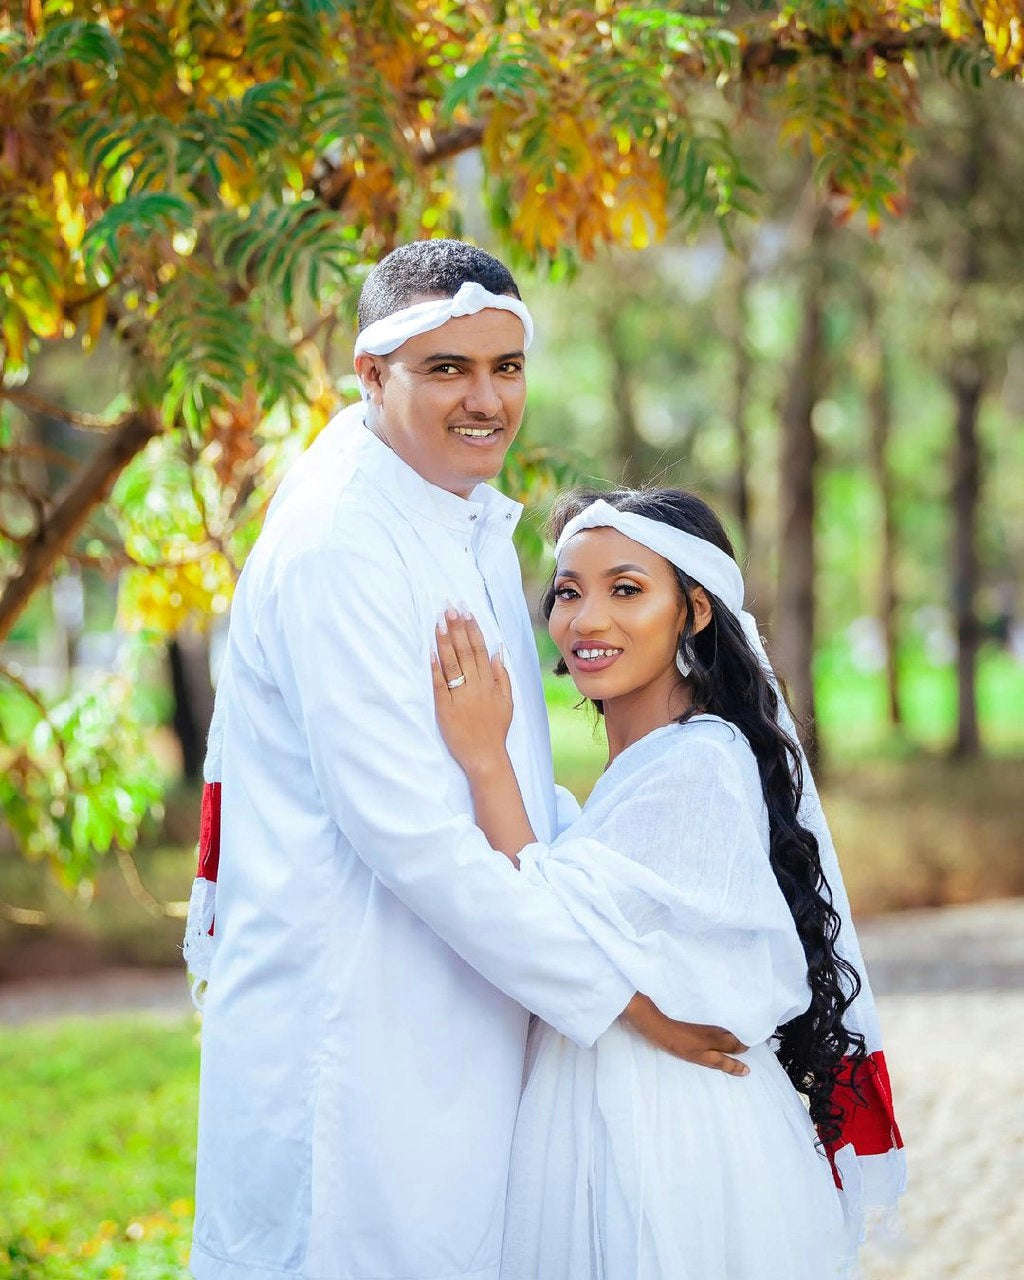 Stylish Oromo Couples Outfit: Elegant Red Design in Traditional Oromo Couples Outfit Style